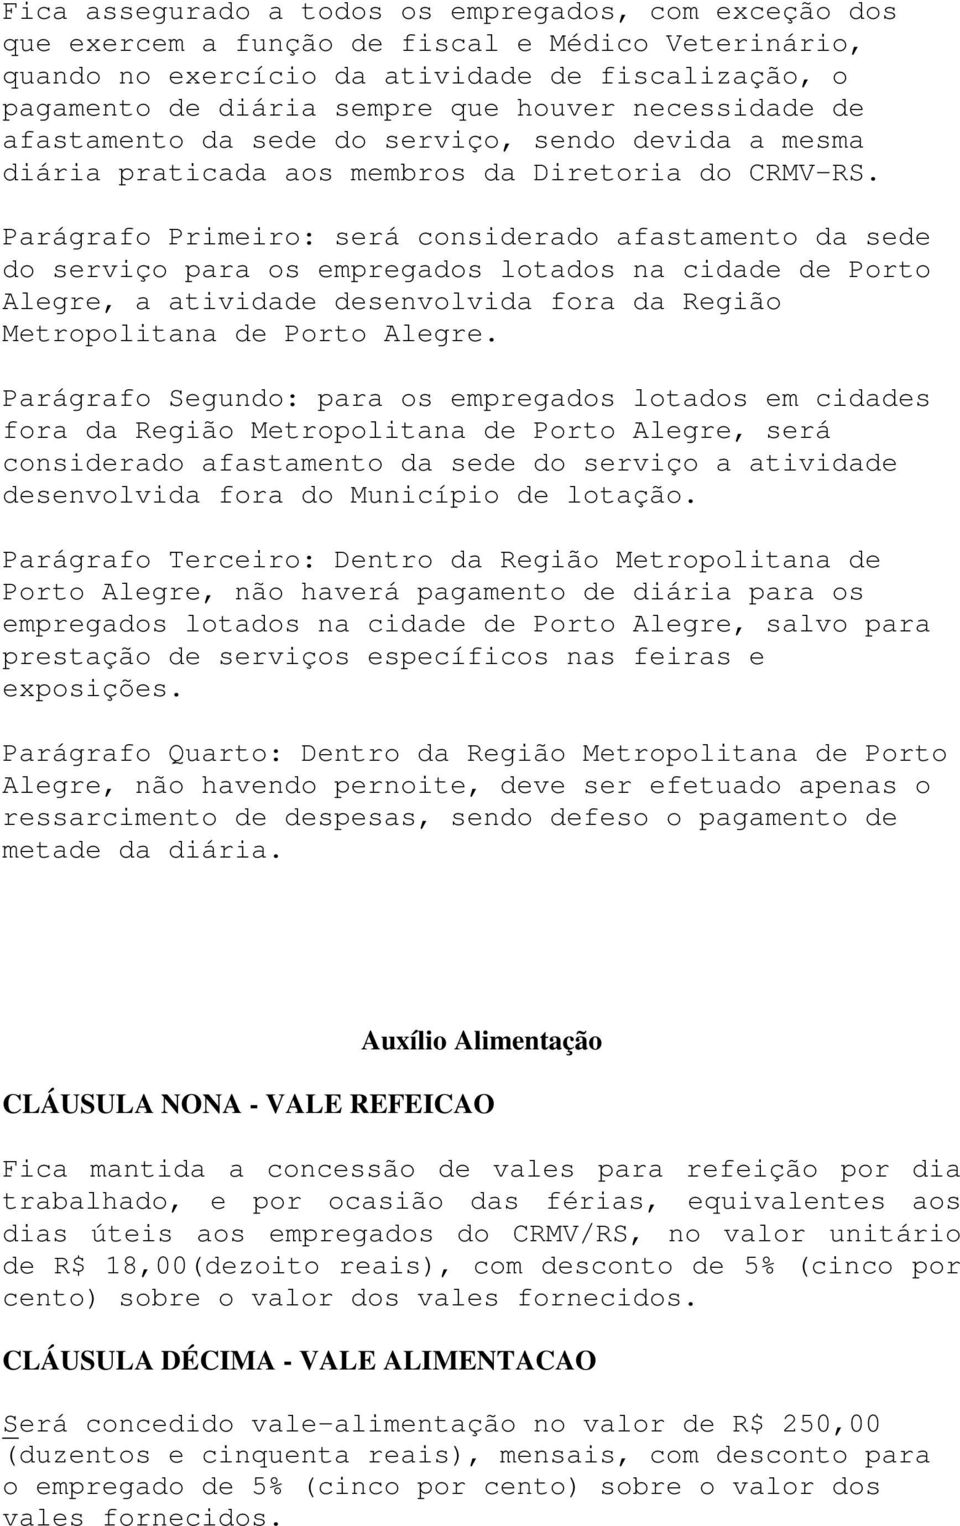 Parágrafo Primeiro: será considerado afastamento da sede do serviço para os empregados lotados na cidade de Porto Alegre, a atividade desenvolvida fora da Região Metropolitana de Porto Alegre.